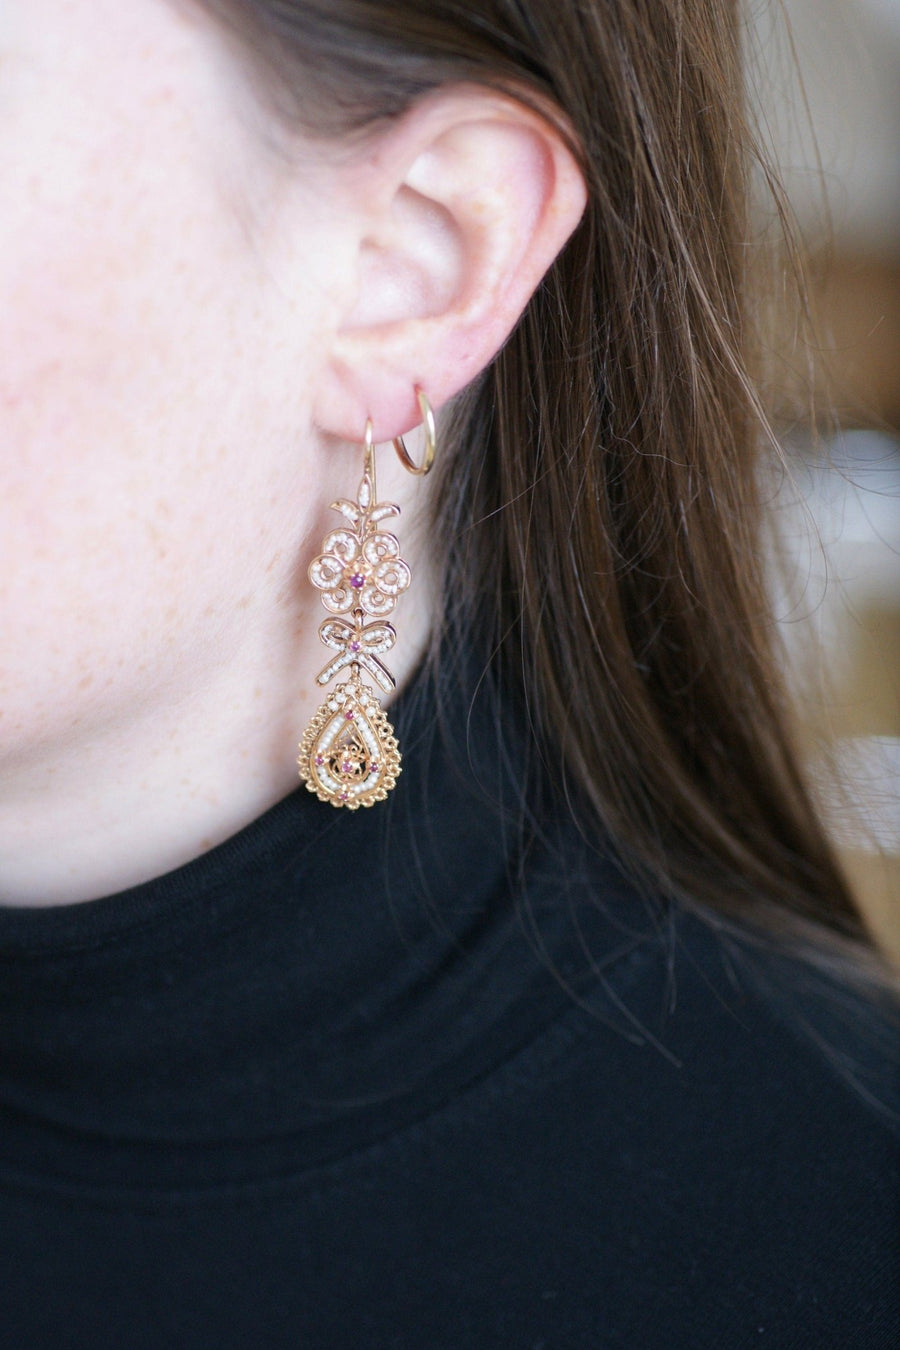 Boucles d'oreilles anciennes, perles, rubis sur or rose filigrané - Galerie Pénélope